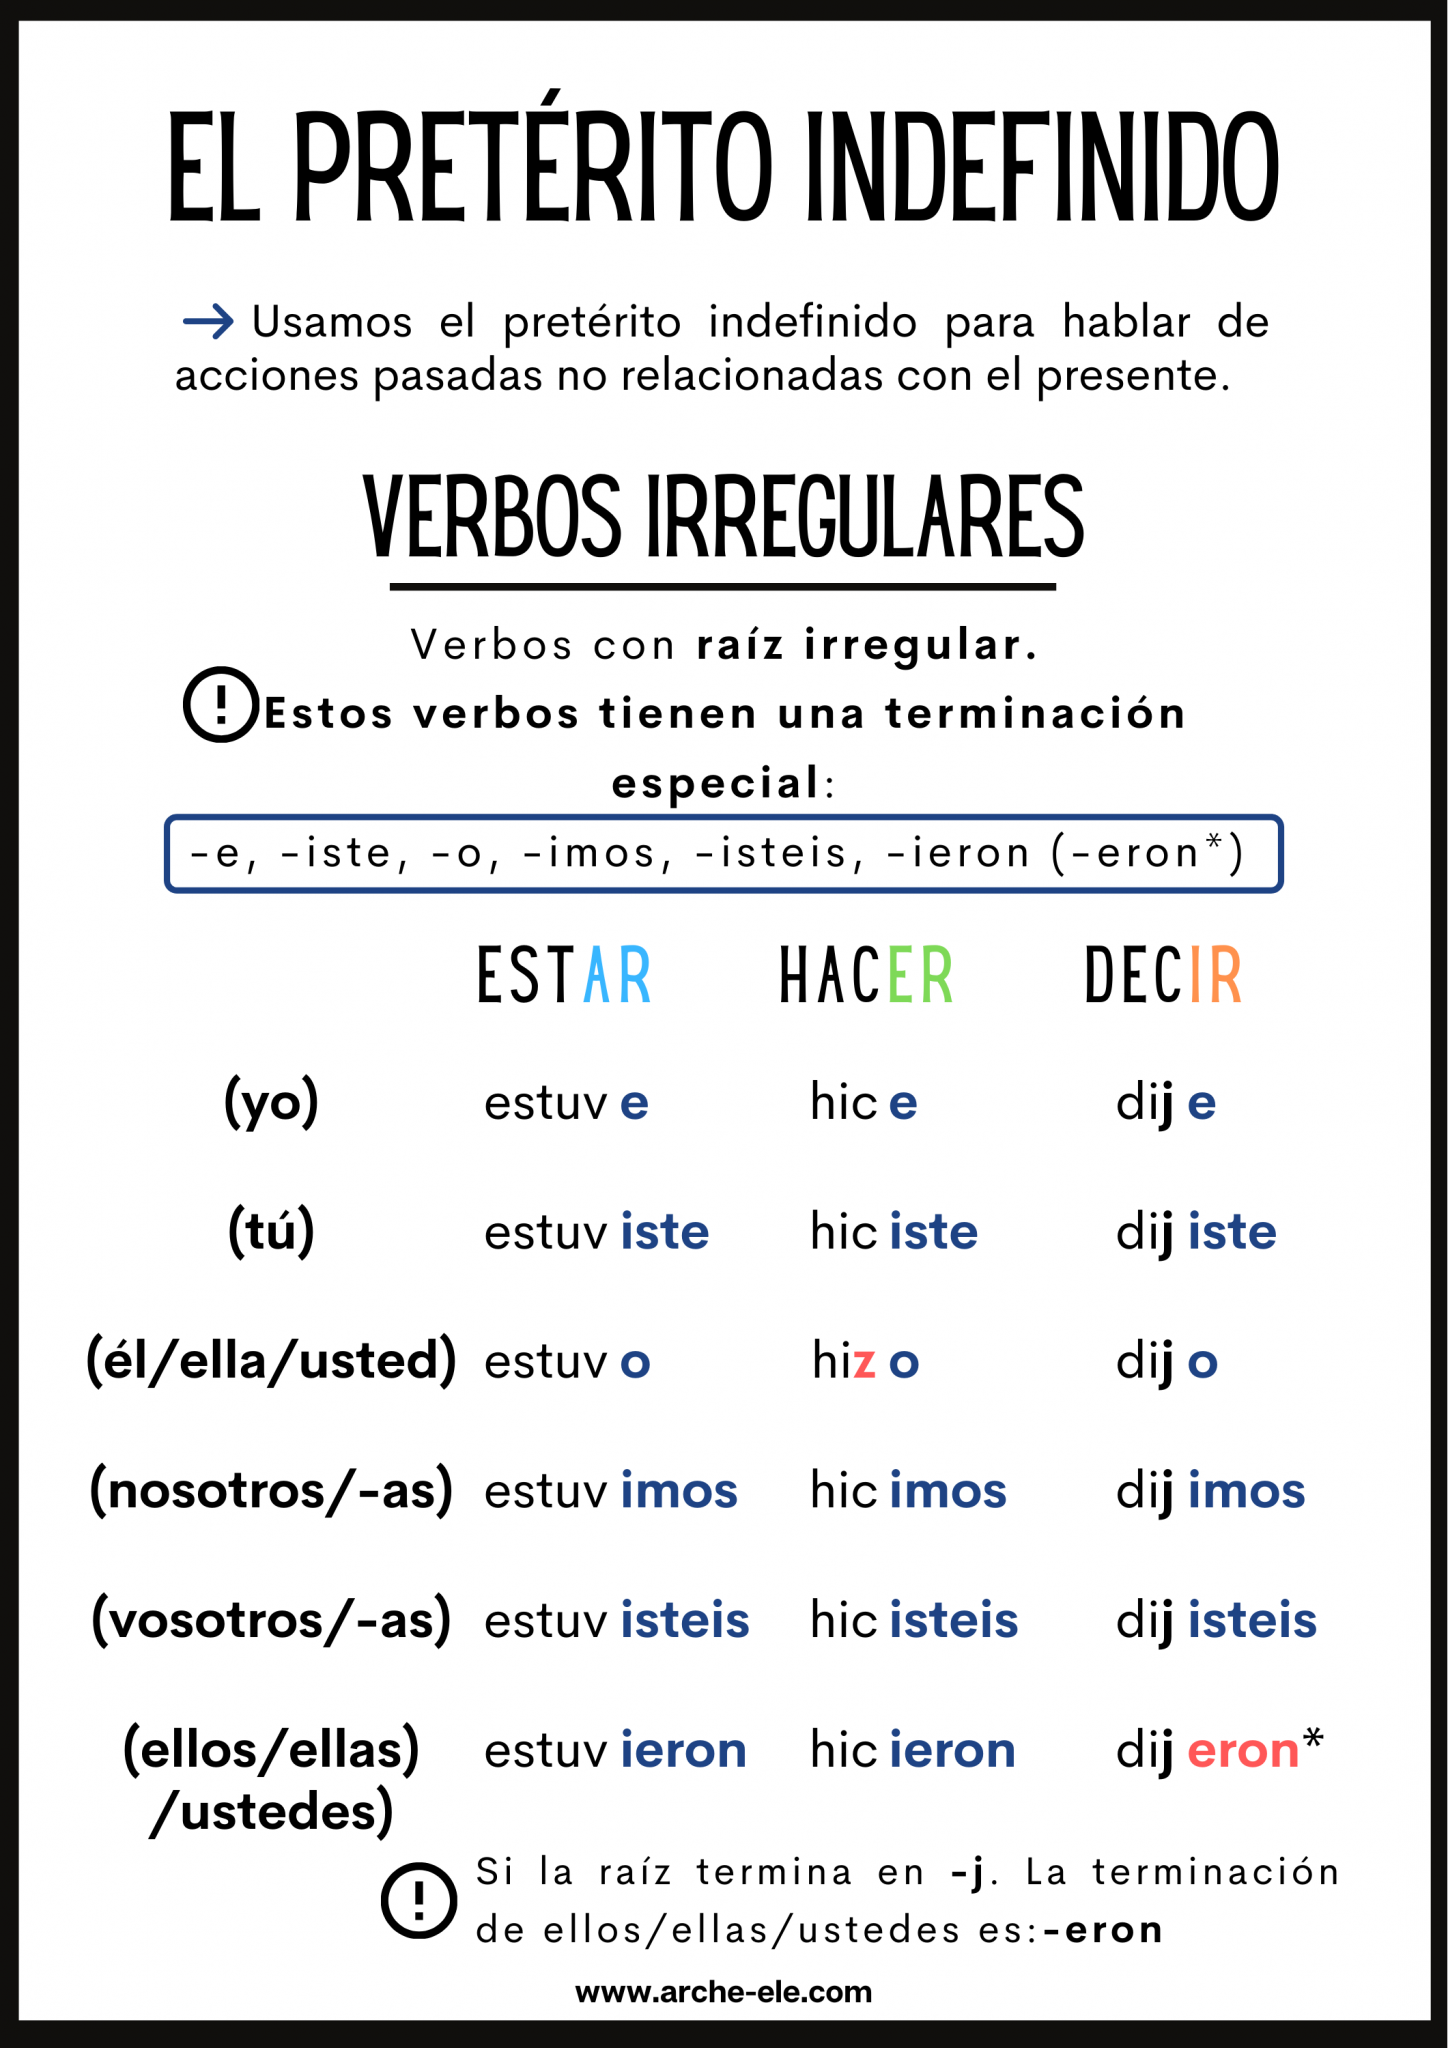 indefinido-verbos-irregulares-verbos-ele-arche-ele